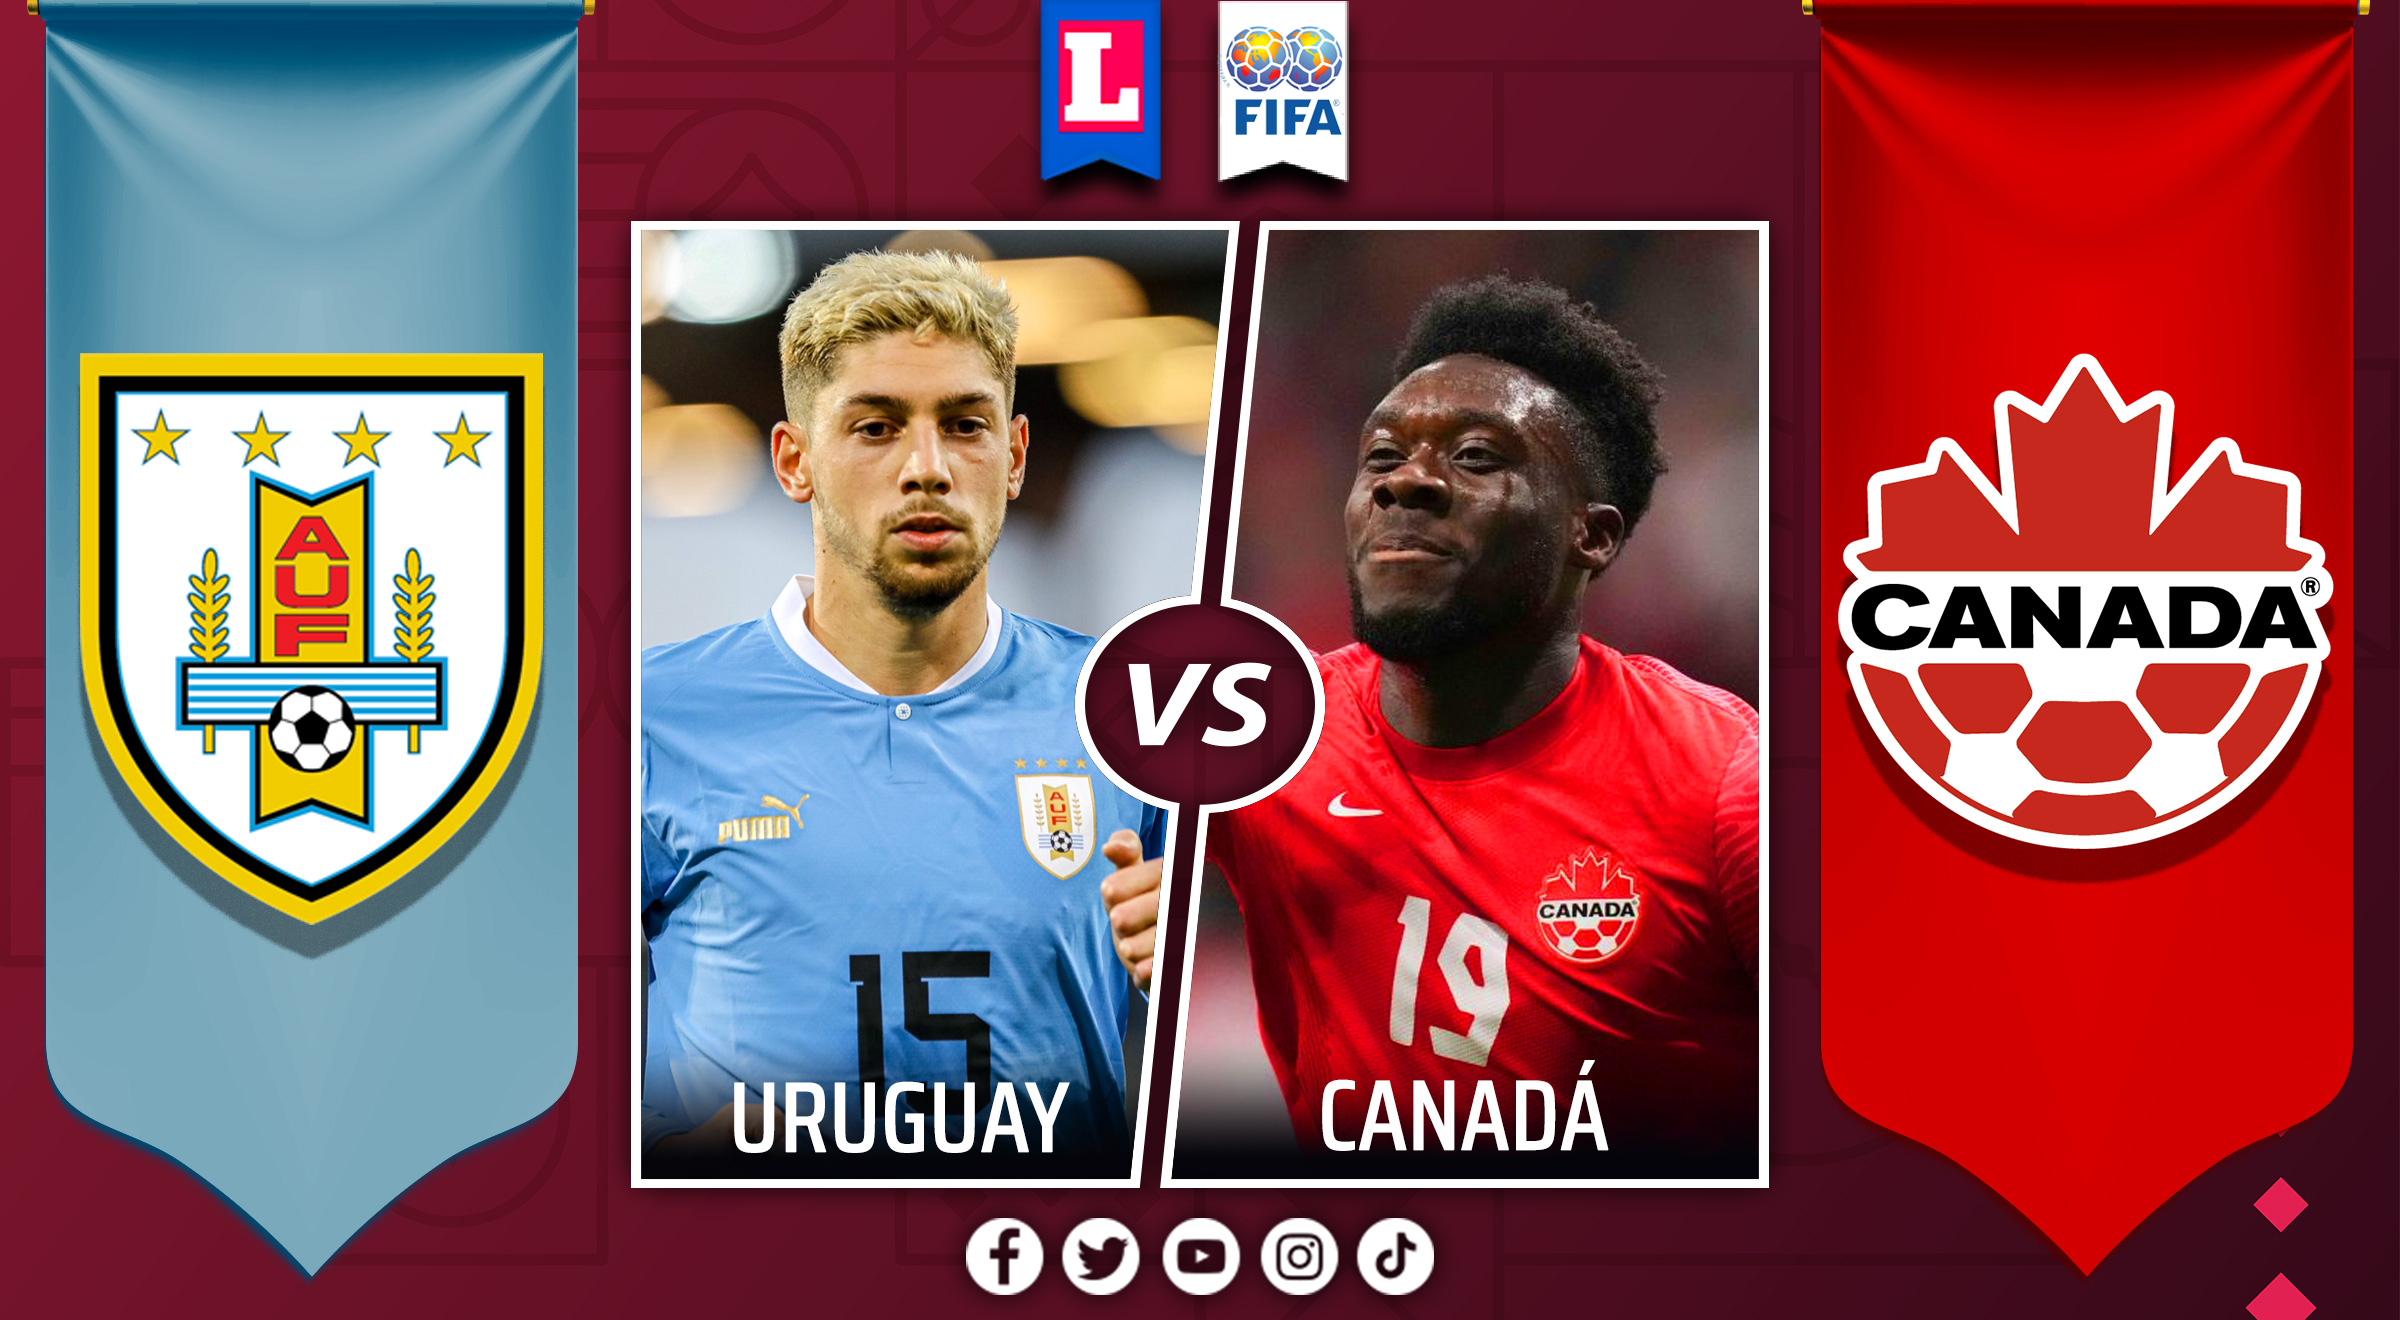 Canadá - Uruguay en vivo: amistoso internacional